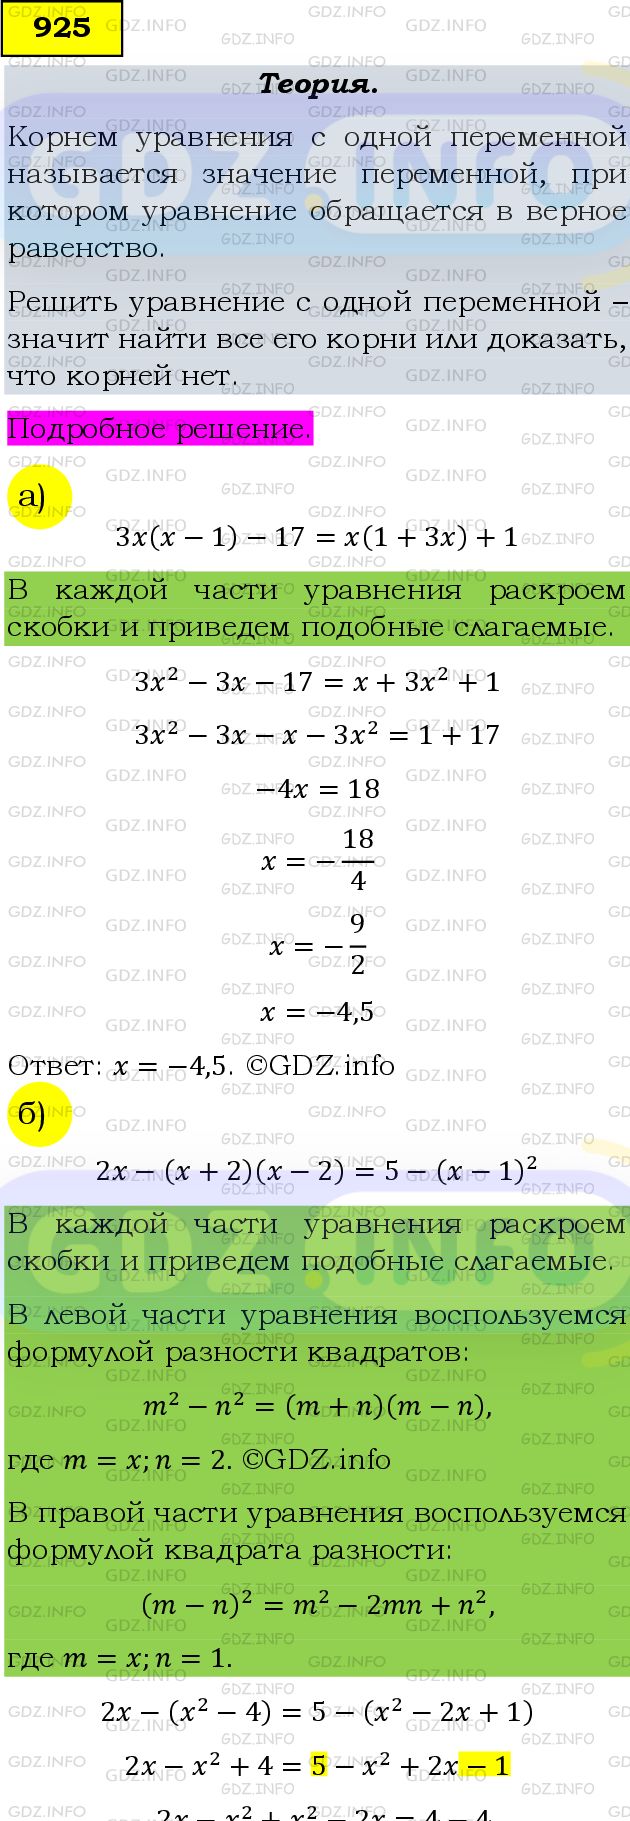 Фото подробного решения: Номер задания №925 из ГДЗ по Алгебре 9 класс: Макарычев Ю.Н.